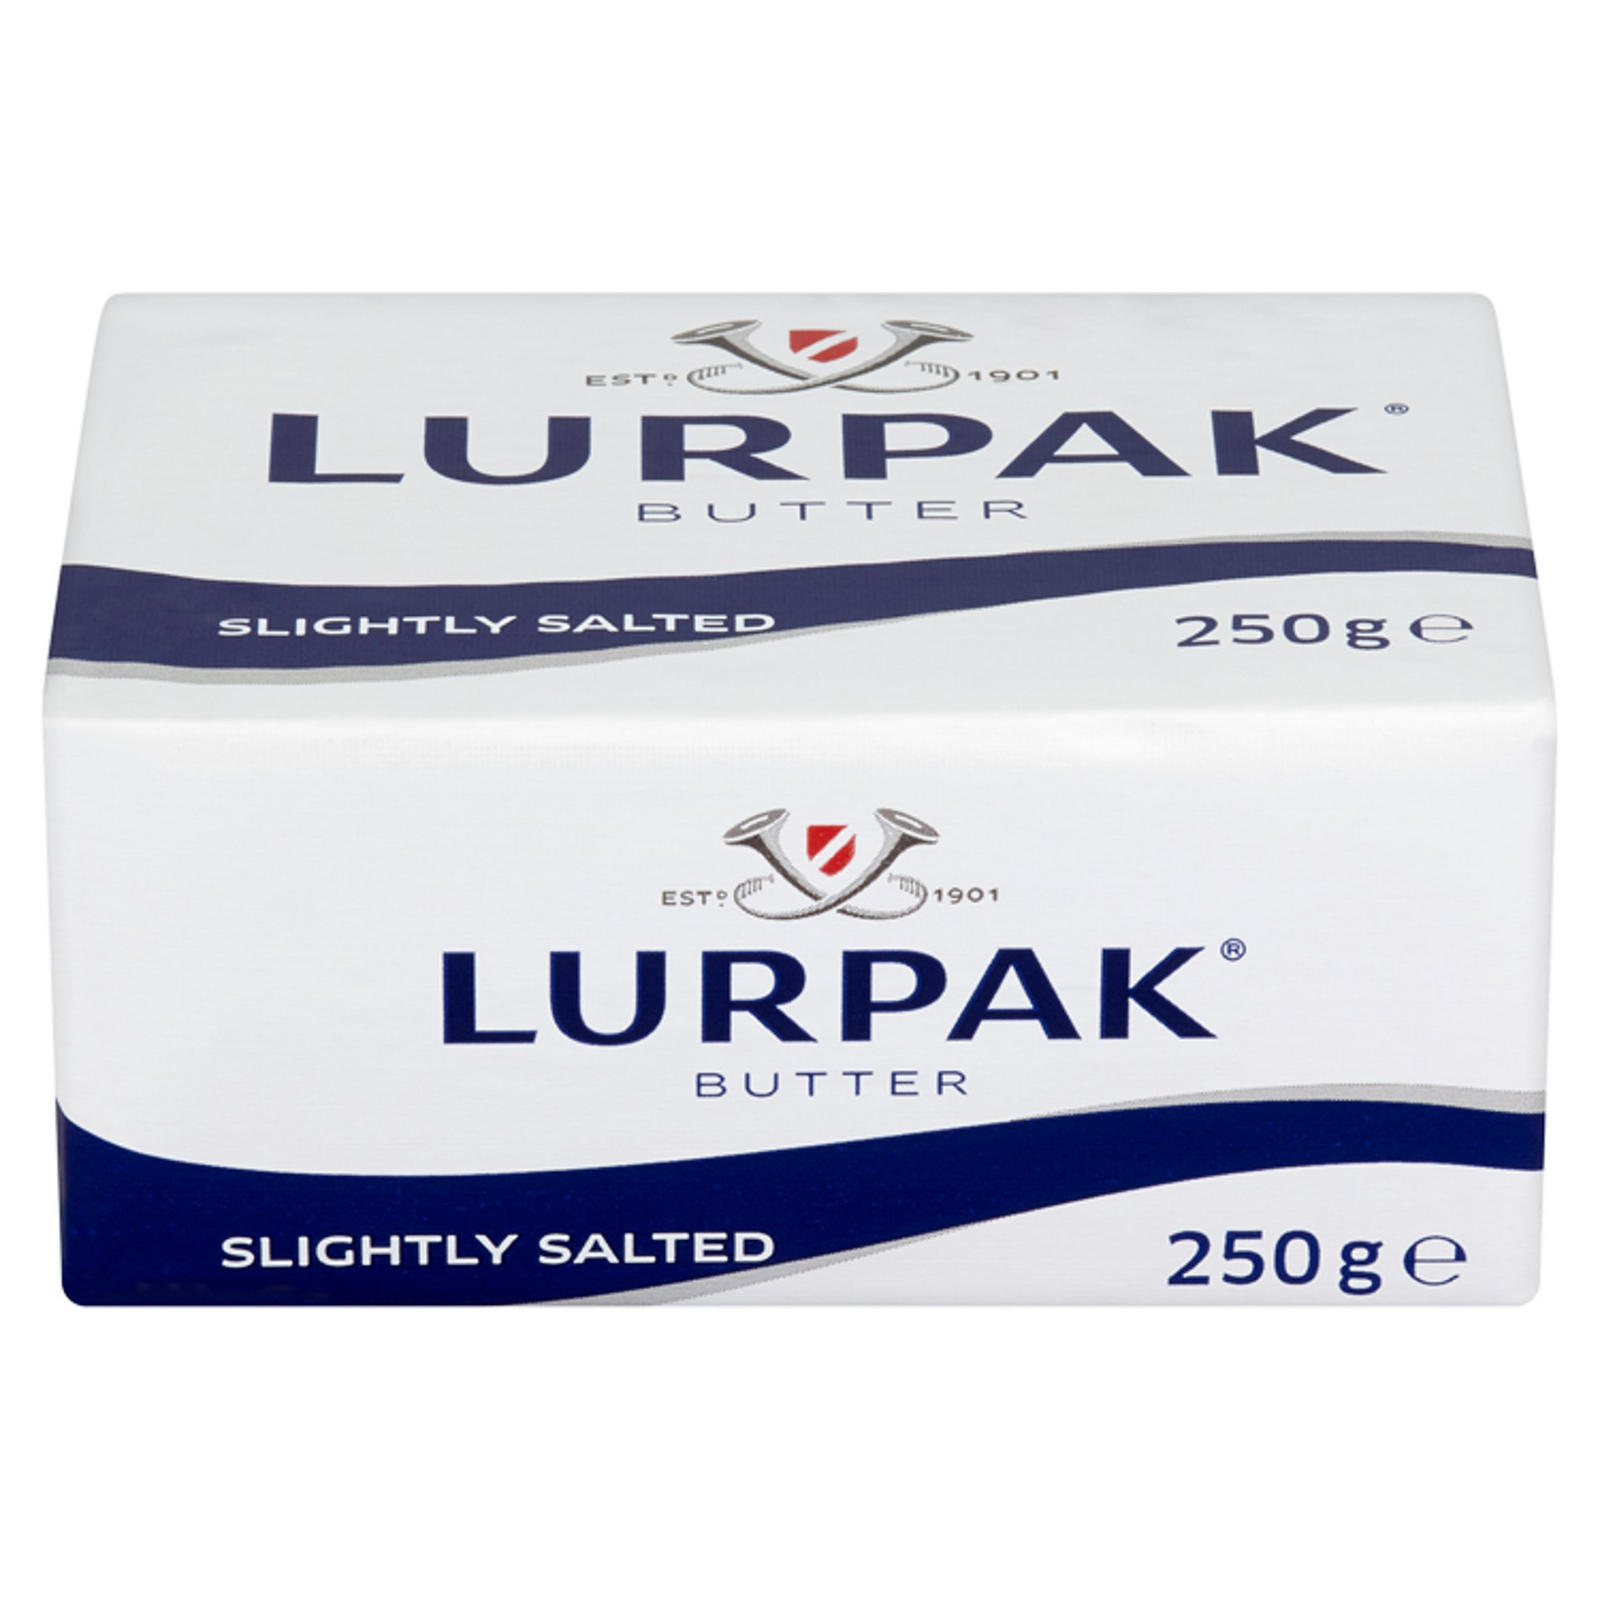 Lurpak Butter Slightly Salted 250g Butter & Margarine Iceland Foods.